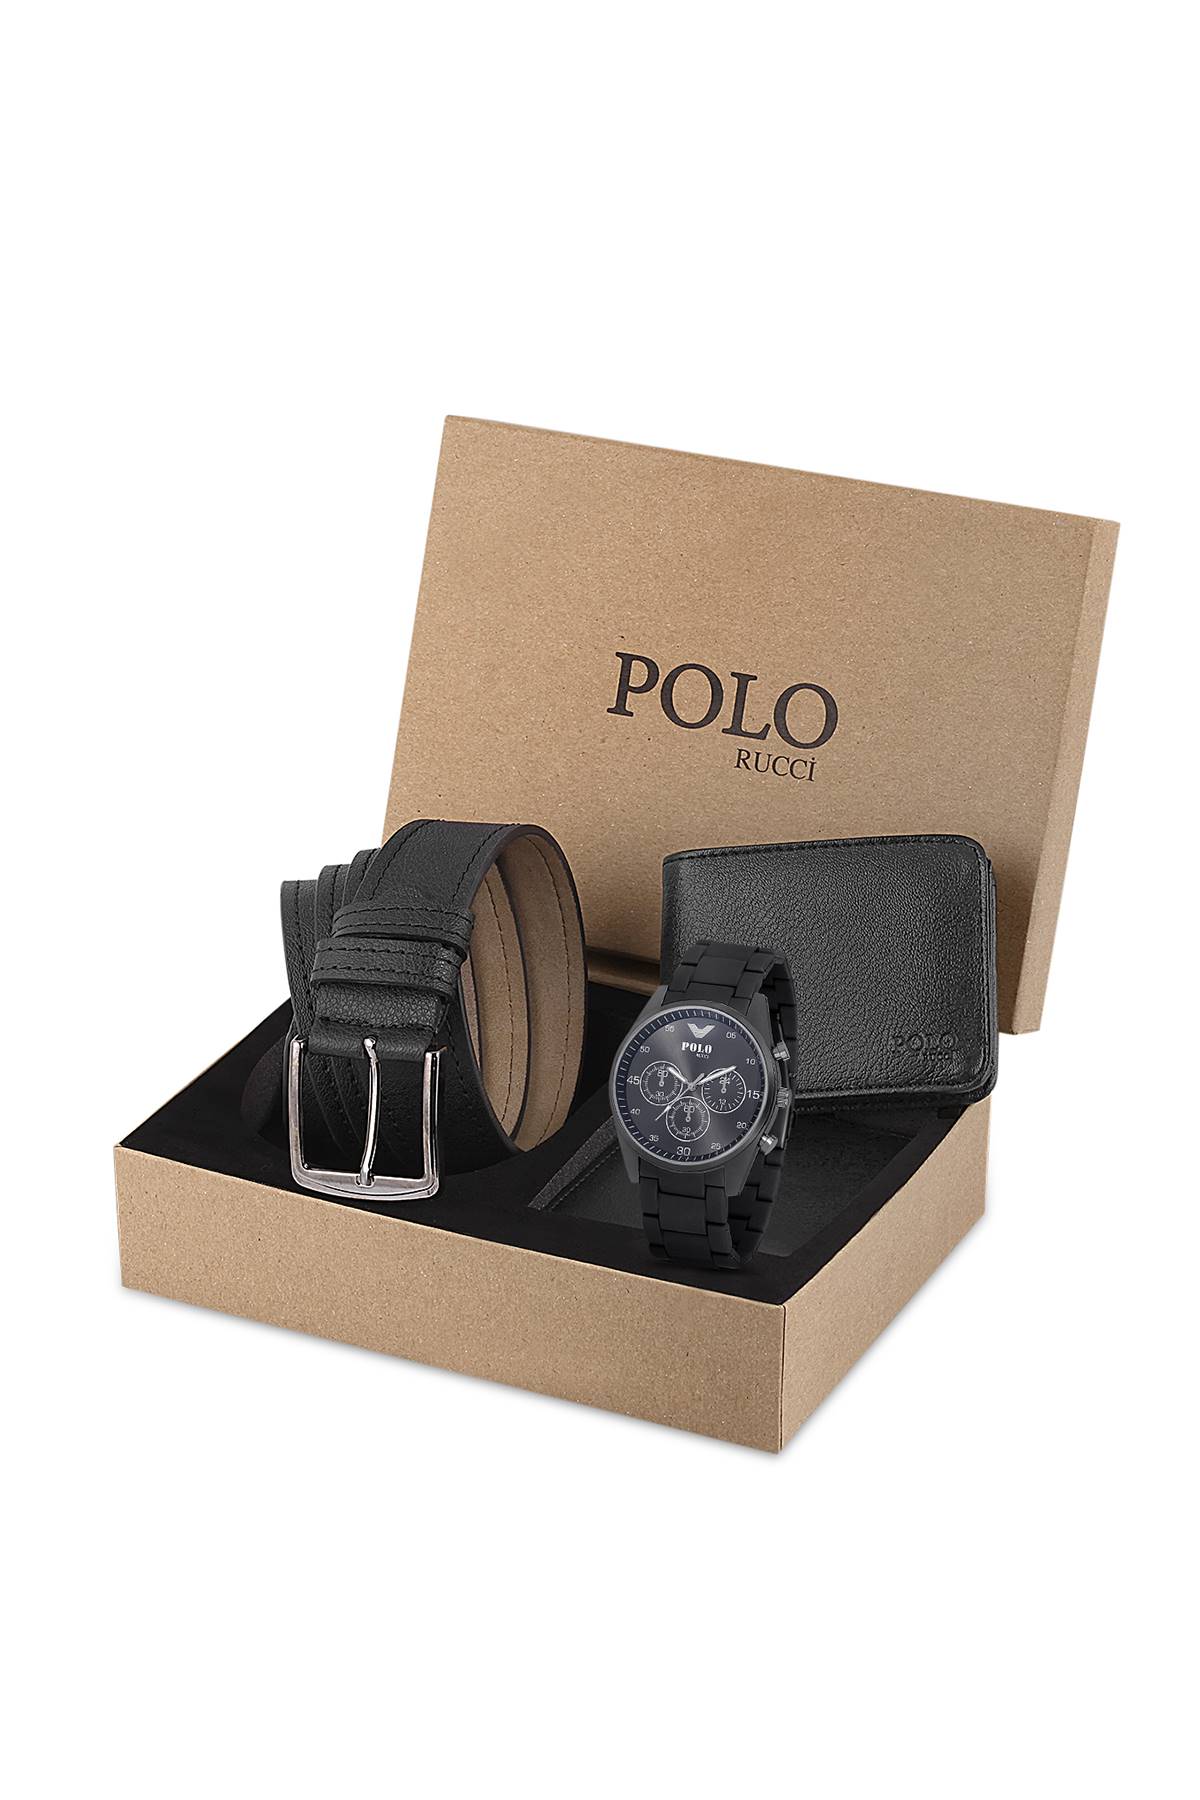 Polo Rucci Erkek Hediye Paketli Kişiye Özel Kol Saati Kapıda Ödeme      PL-0686E1